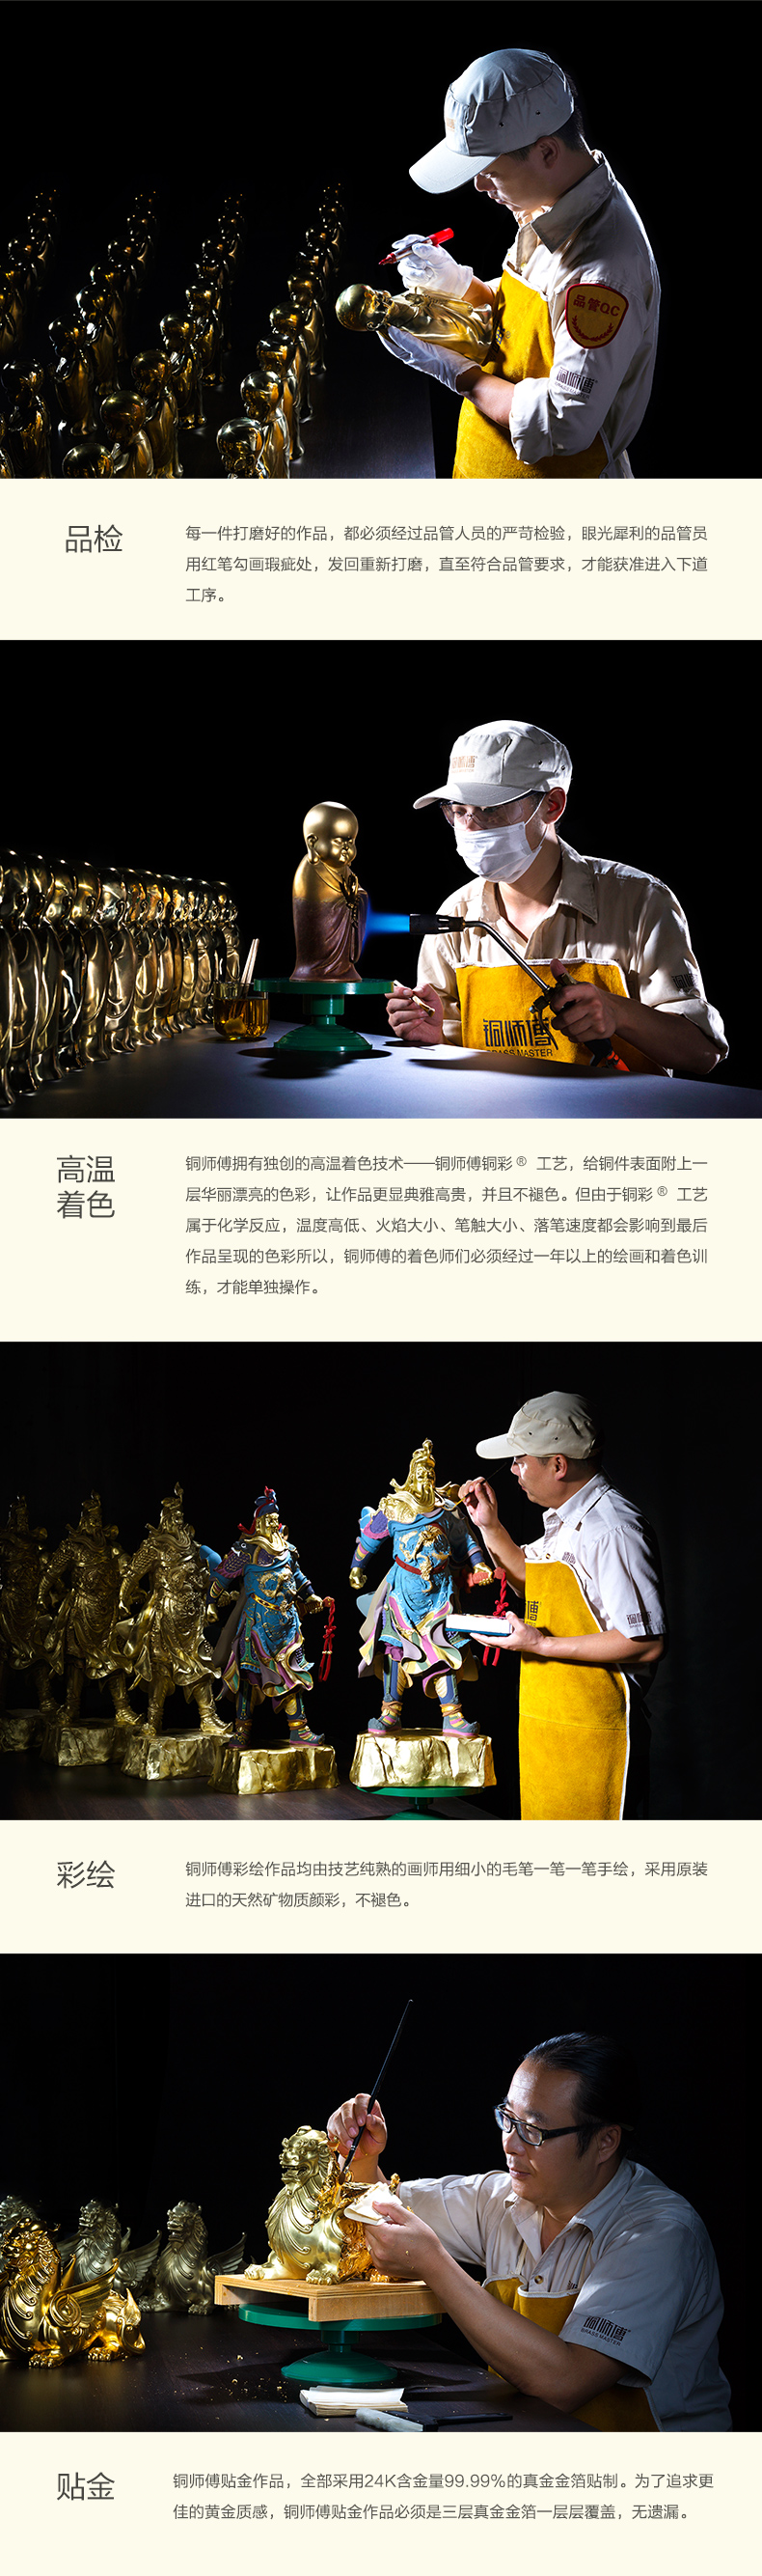 Đồng thạc sĩ đồ trang trí bằng đồng "Wei Meng Hao (nhỏ)" phụ kiện nhà đồng thủ công mỹ nghệ